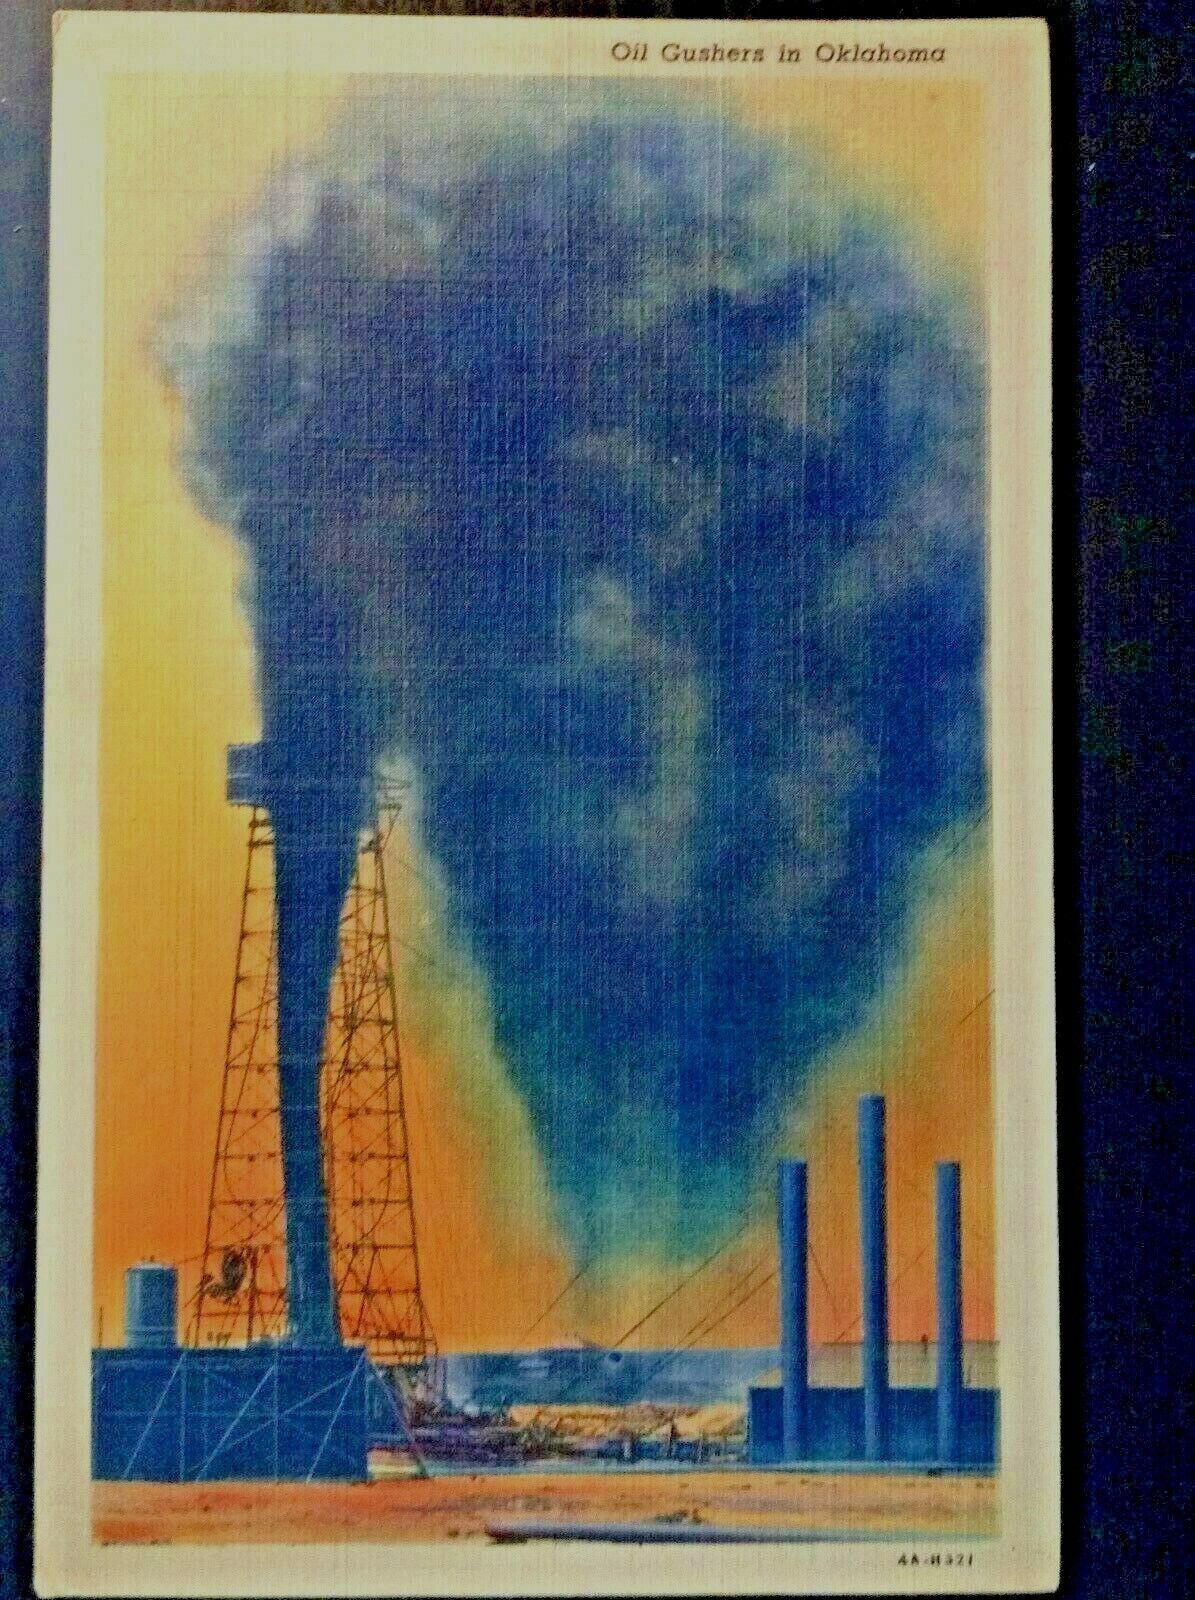 Vintage Postcard 1941 Oil Gushers Oil Wells Oklahoma